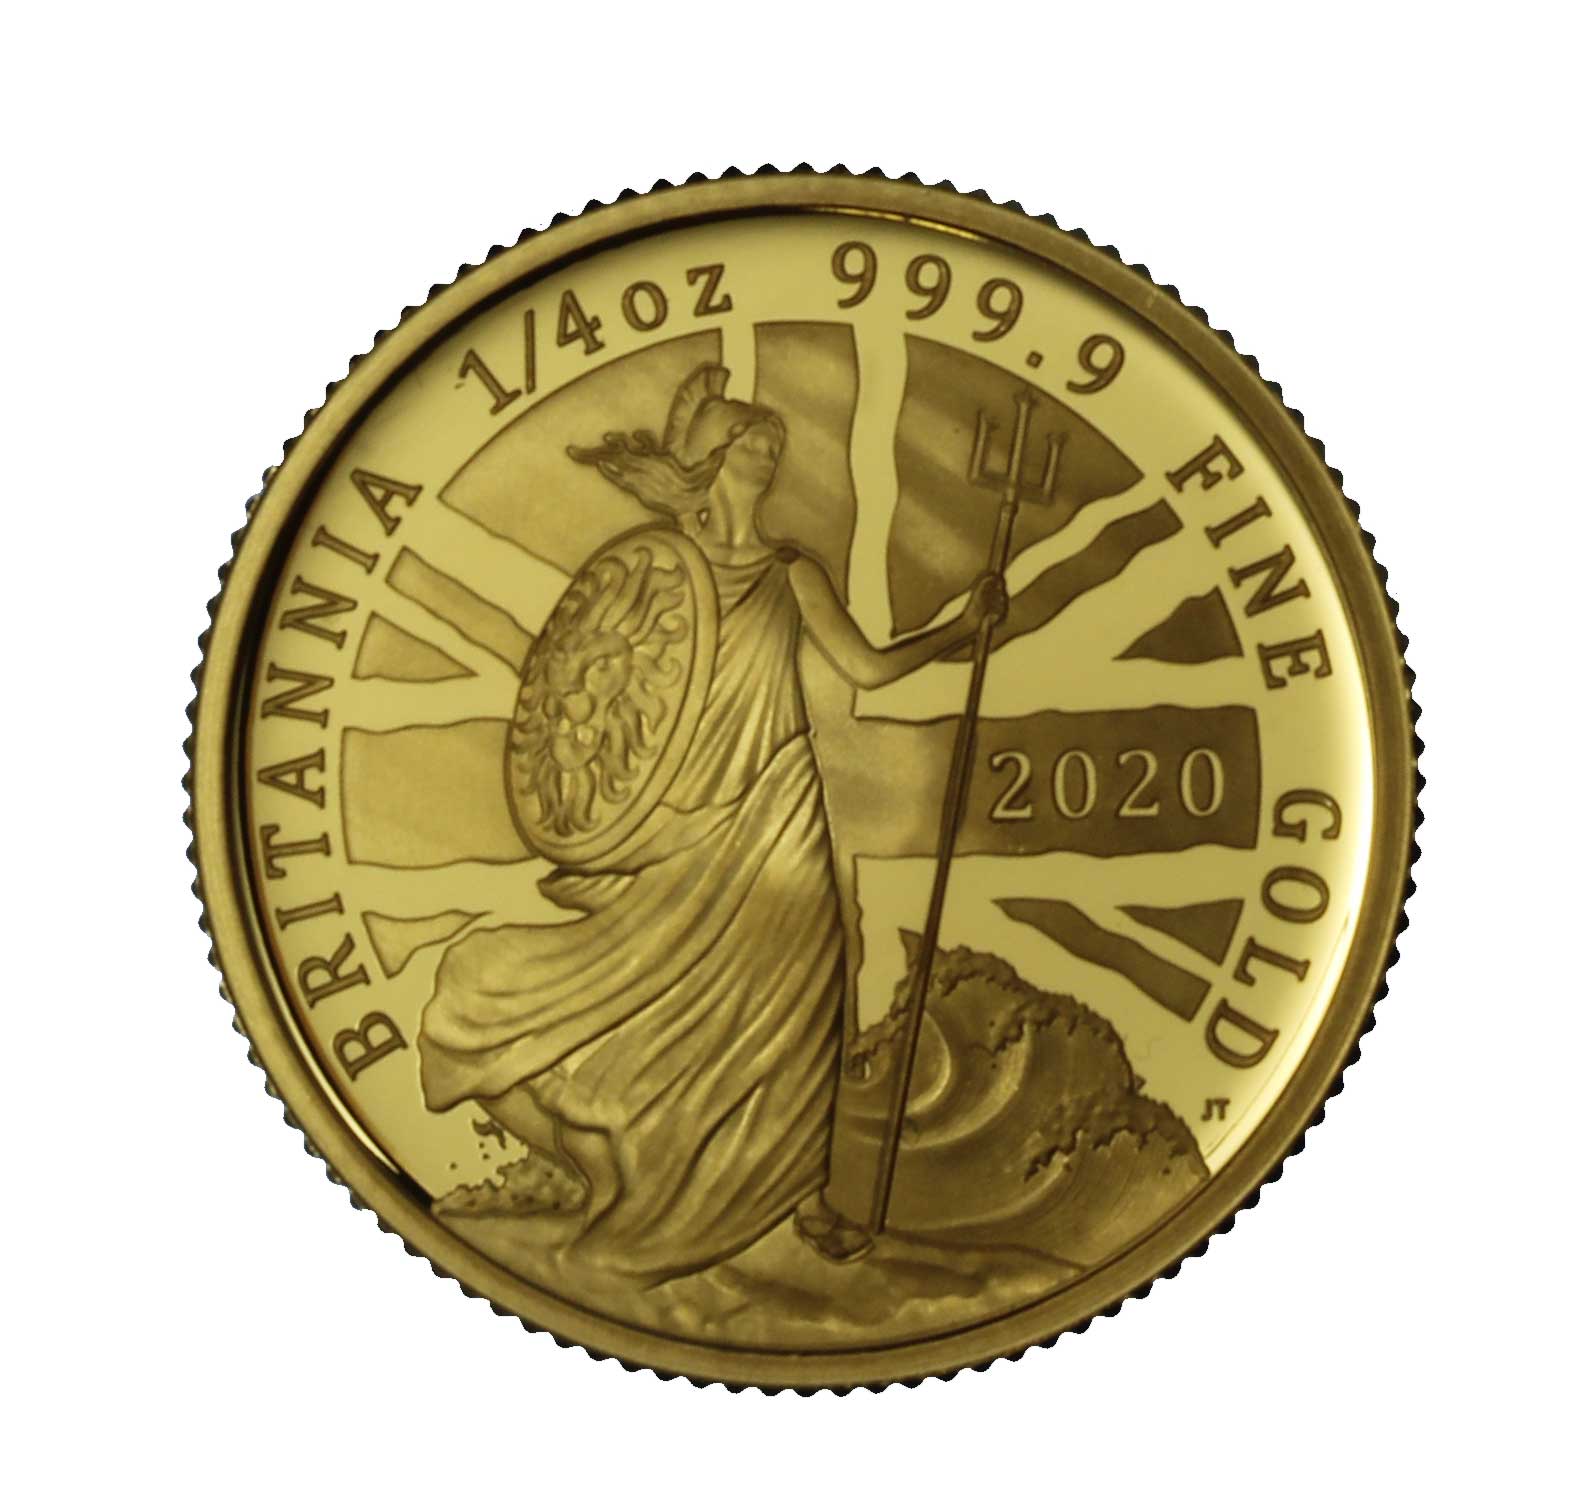 17886_641_1-Gran Bretagna 2020 Britannia 1-4 di oz oro.jpg